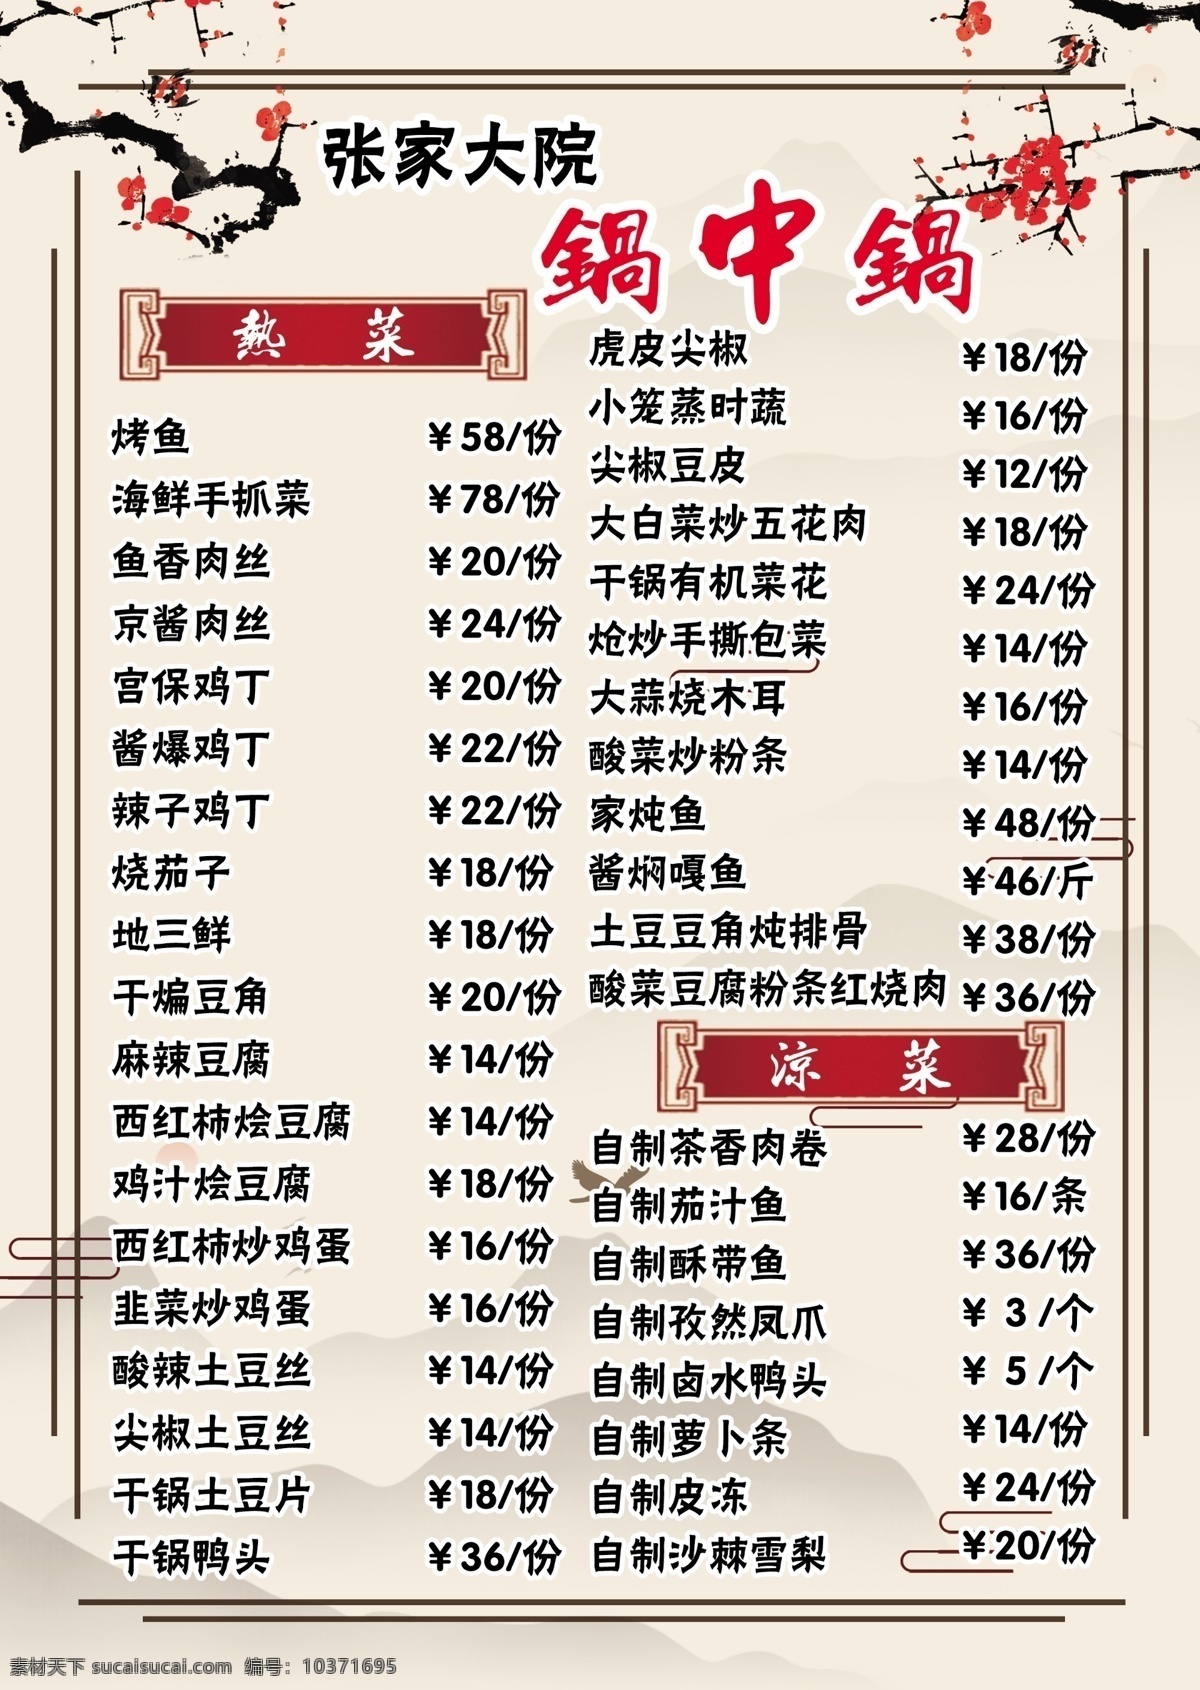 铁锅 炖 菜单 广告 宣传 彩页 双面 菜单菜谱